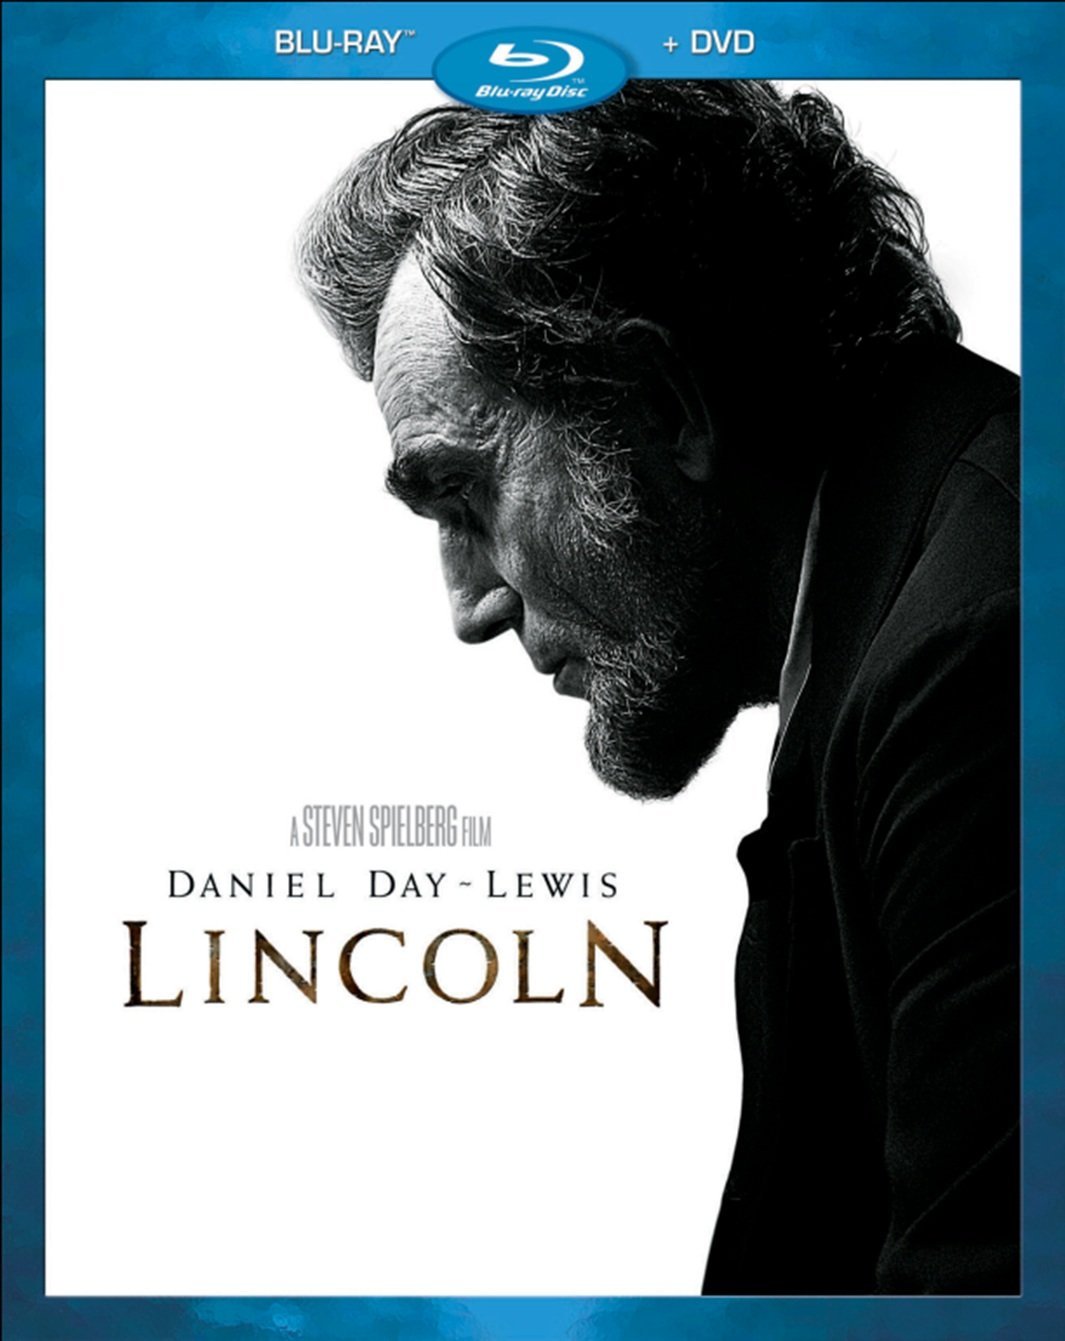 LINCOLN Blu-ray/DVD Box Art